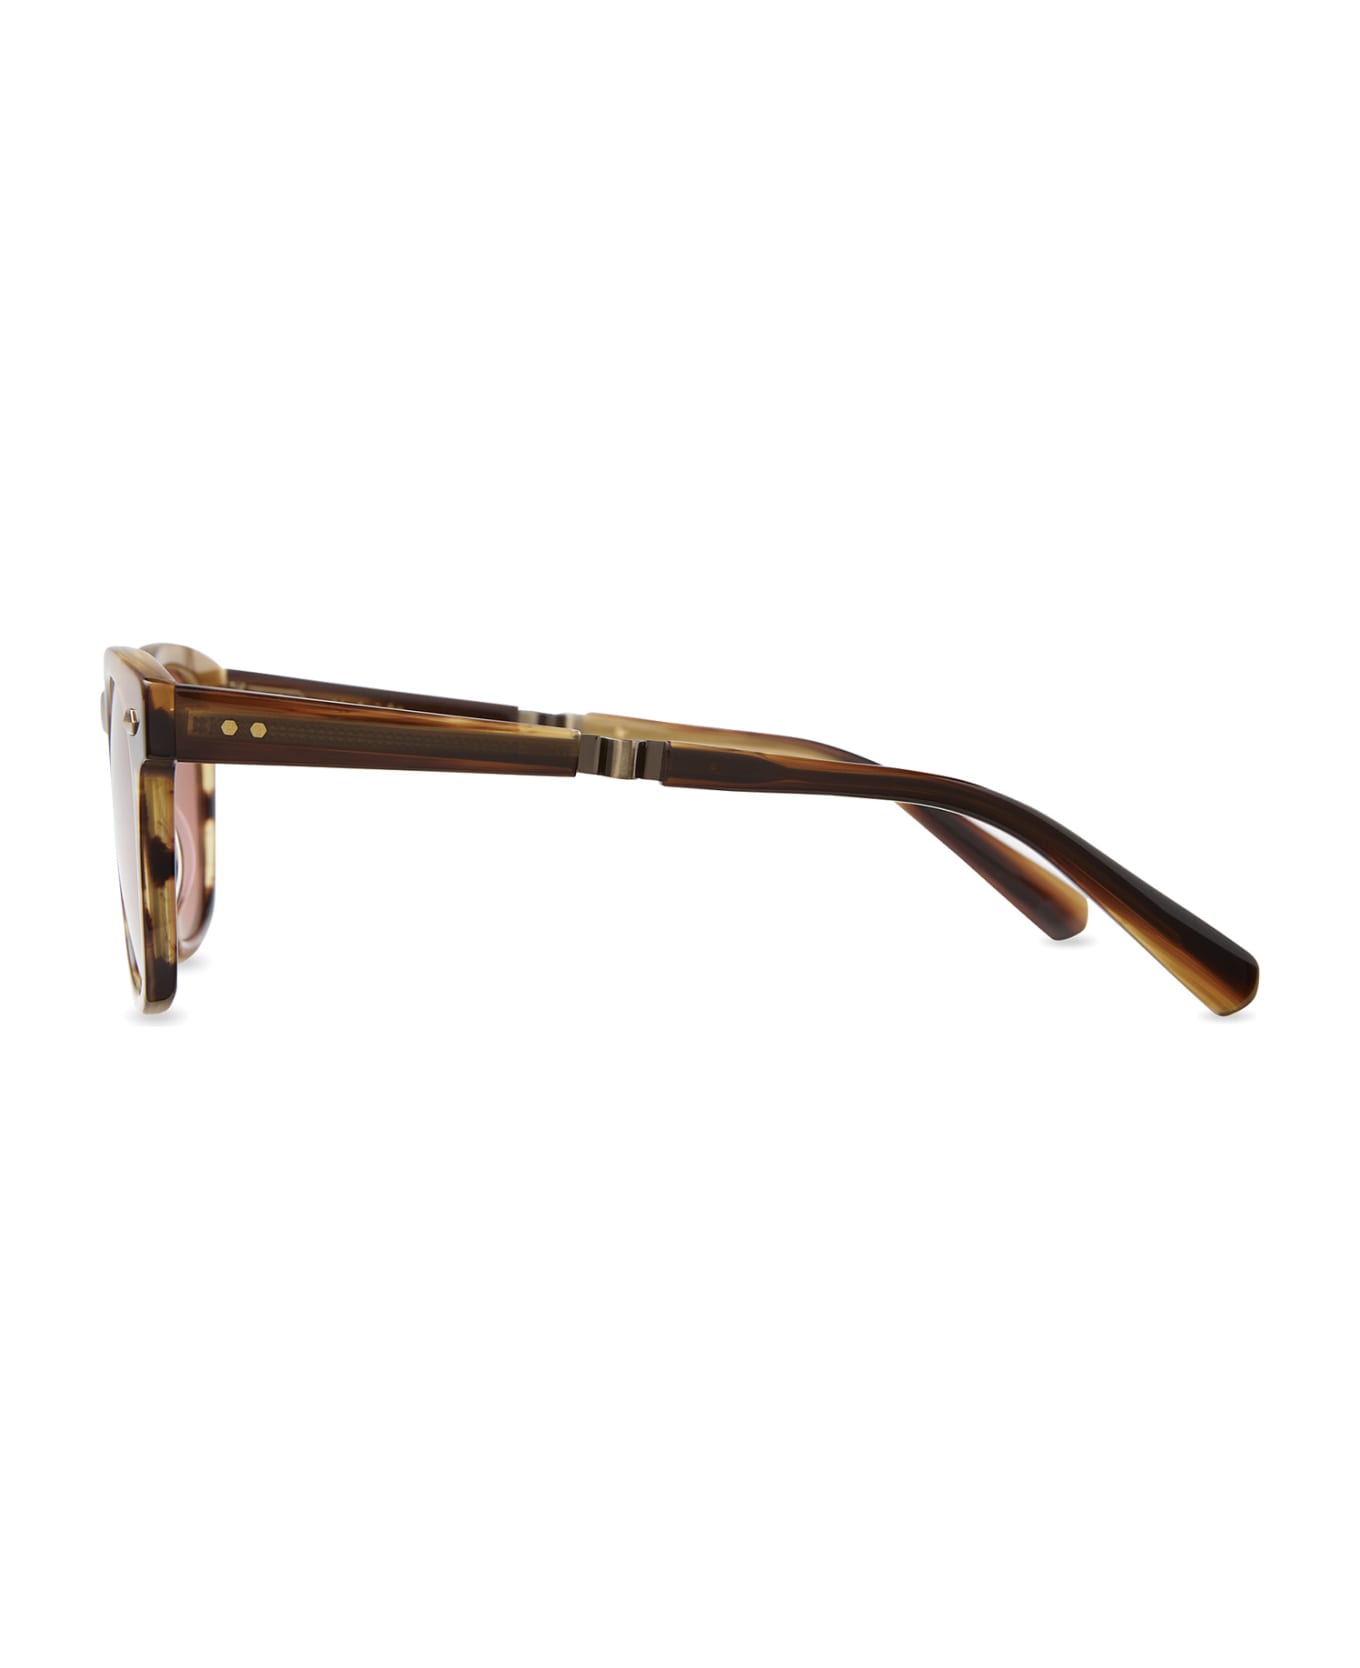 Mr. Leight Hanalei S Koa-antique Gold Sunglasses - Koa-Antique Gold サングラス